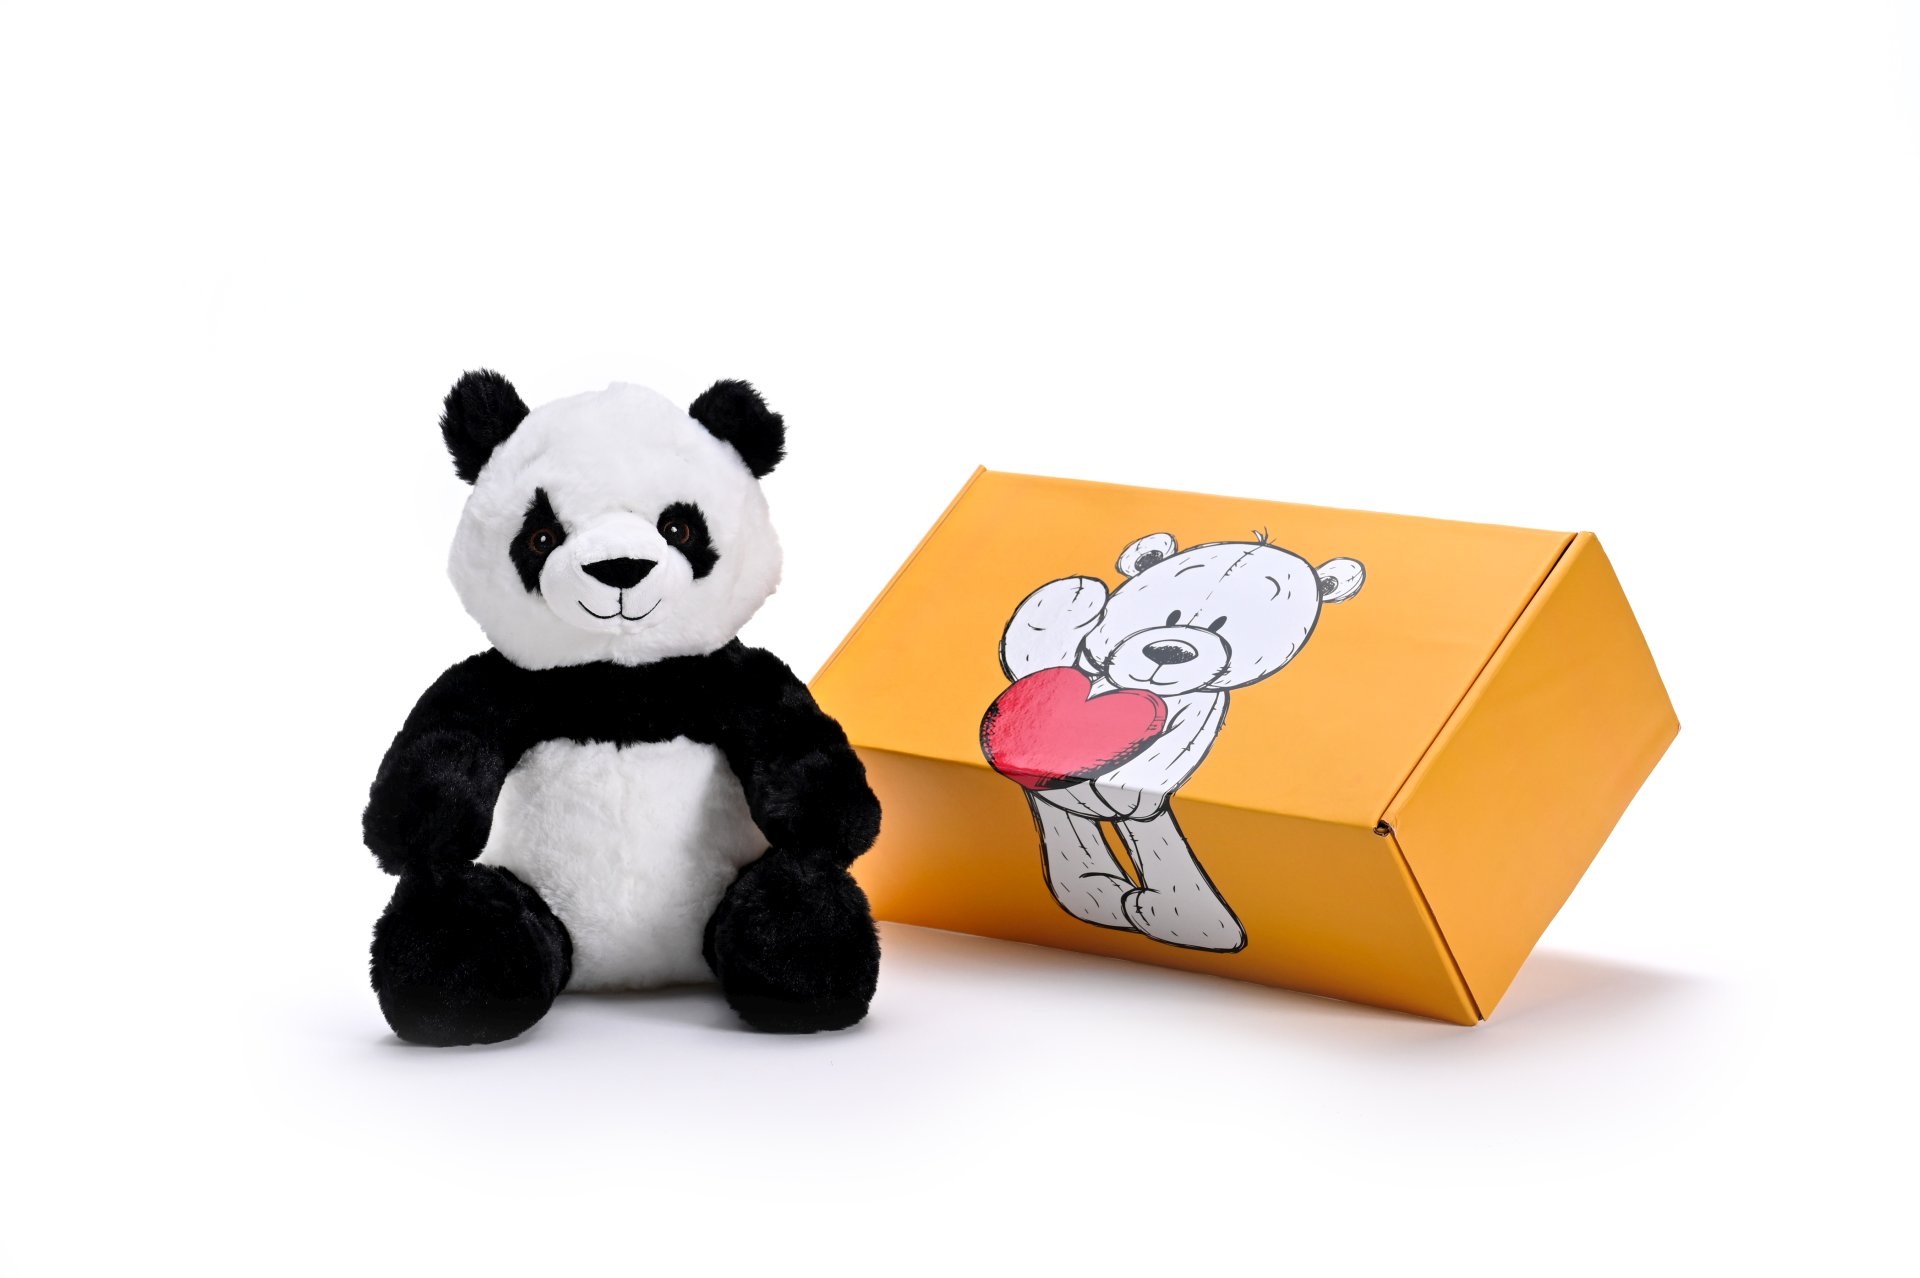 a stuffed panda soft toy next to a box